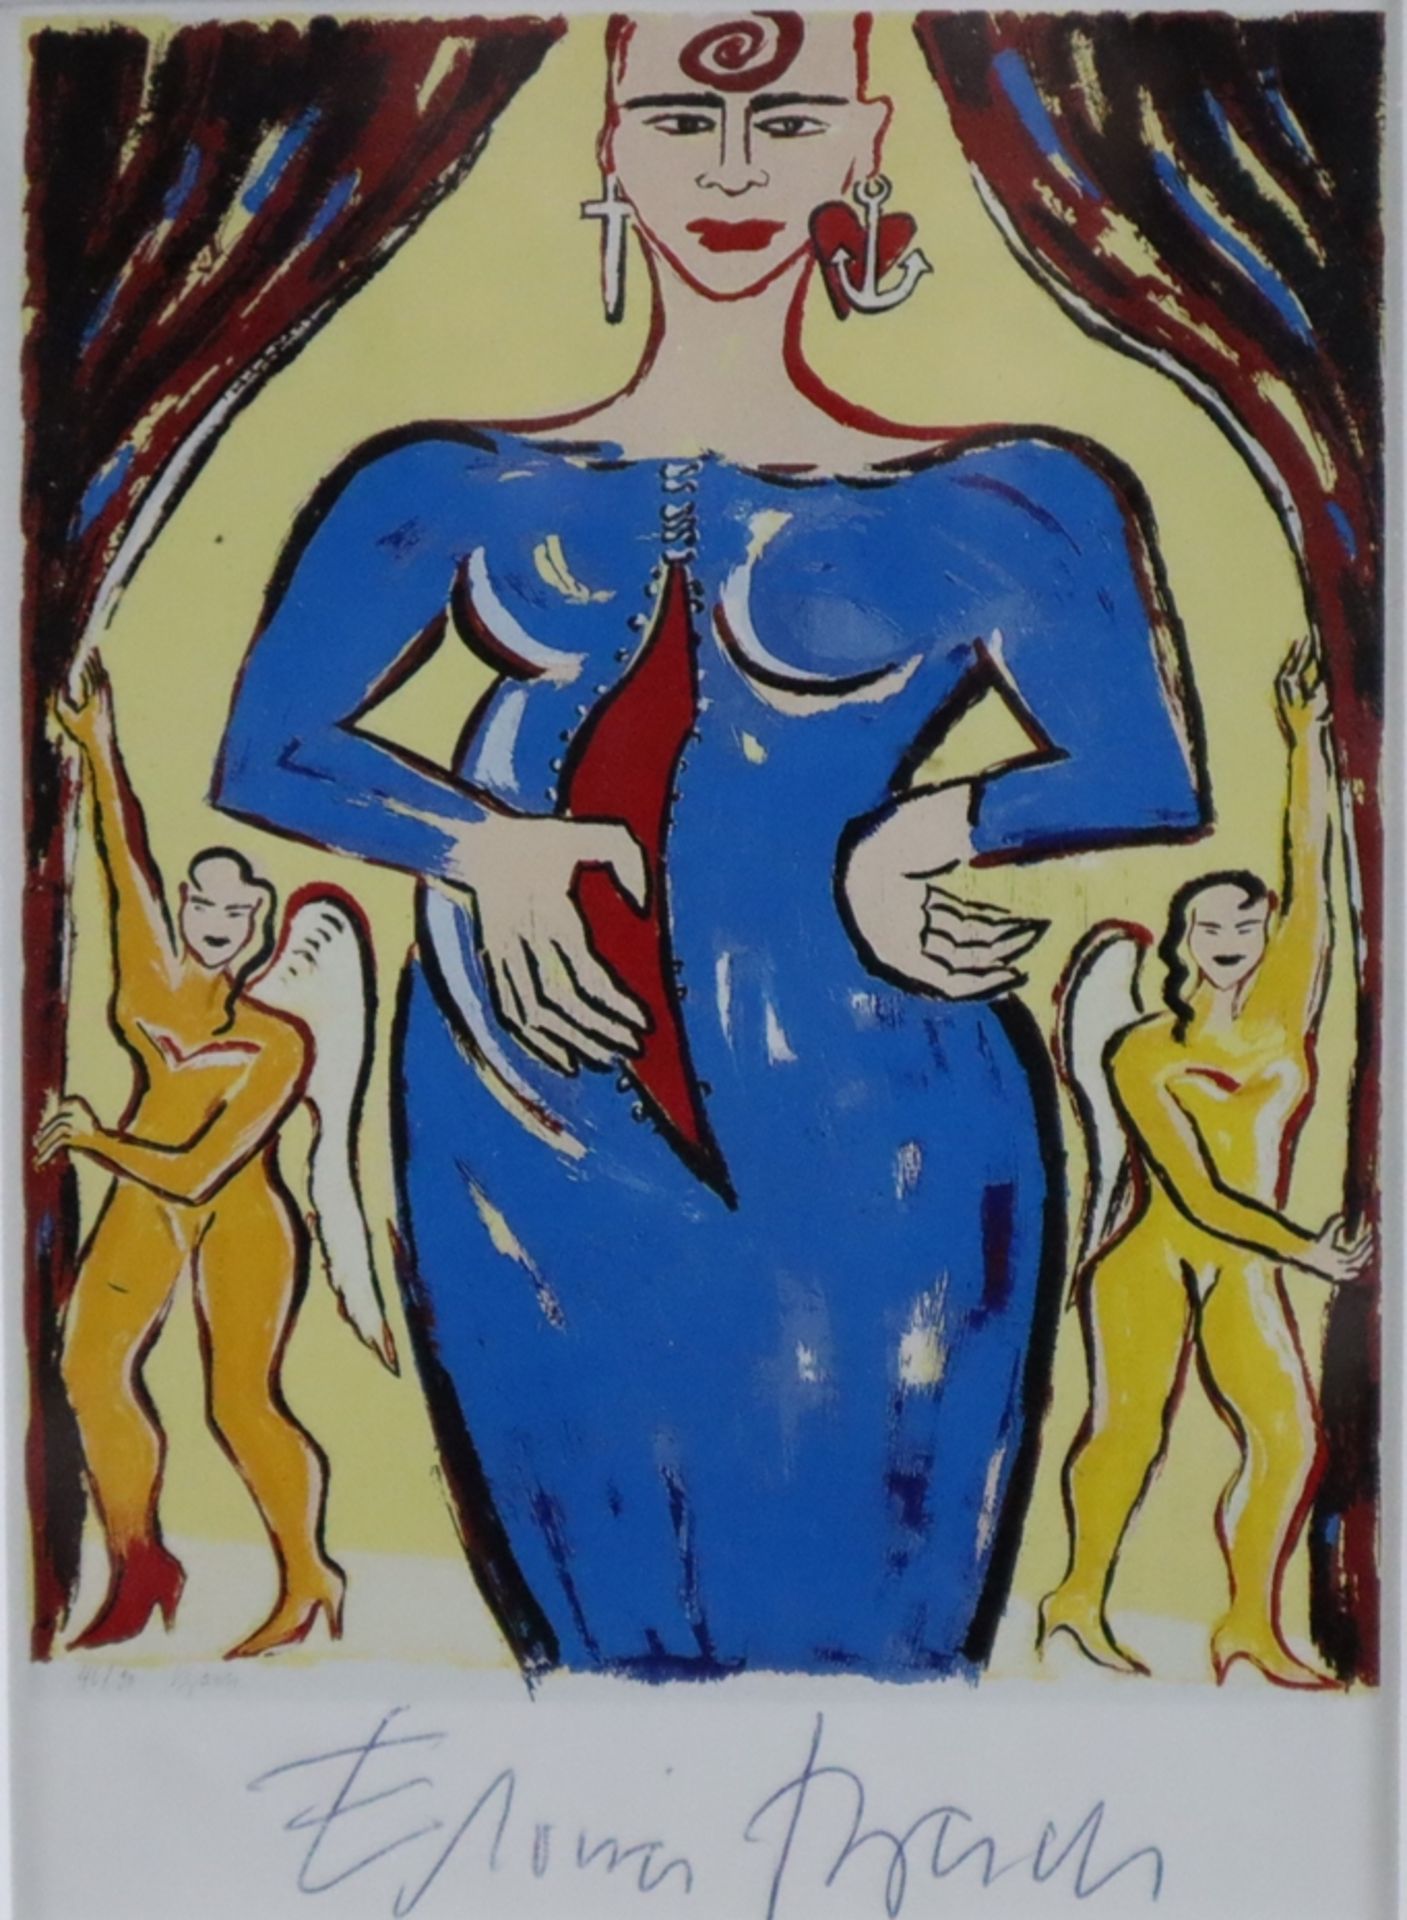 Bach, Elvira (*1951 Neuenhain) - "Für Maodo Sylvester Luis" (1993), handsignierte Kunstpostkarte, M